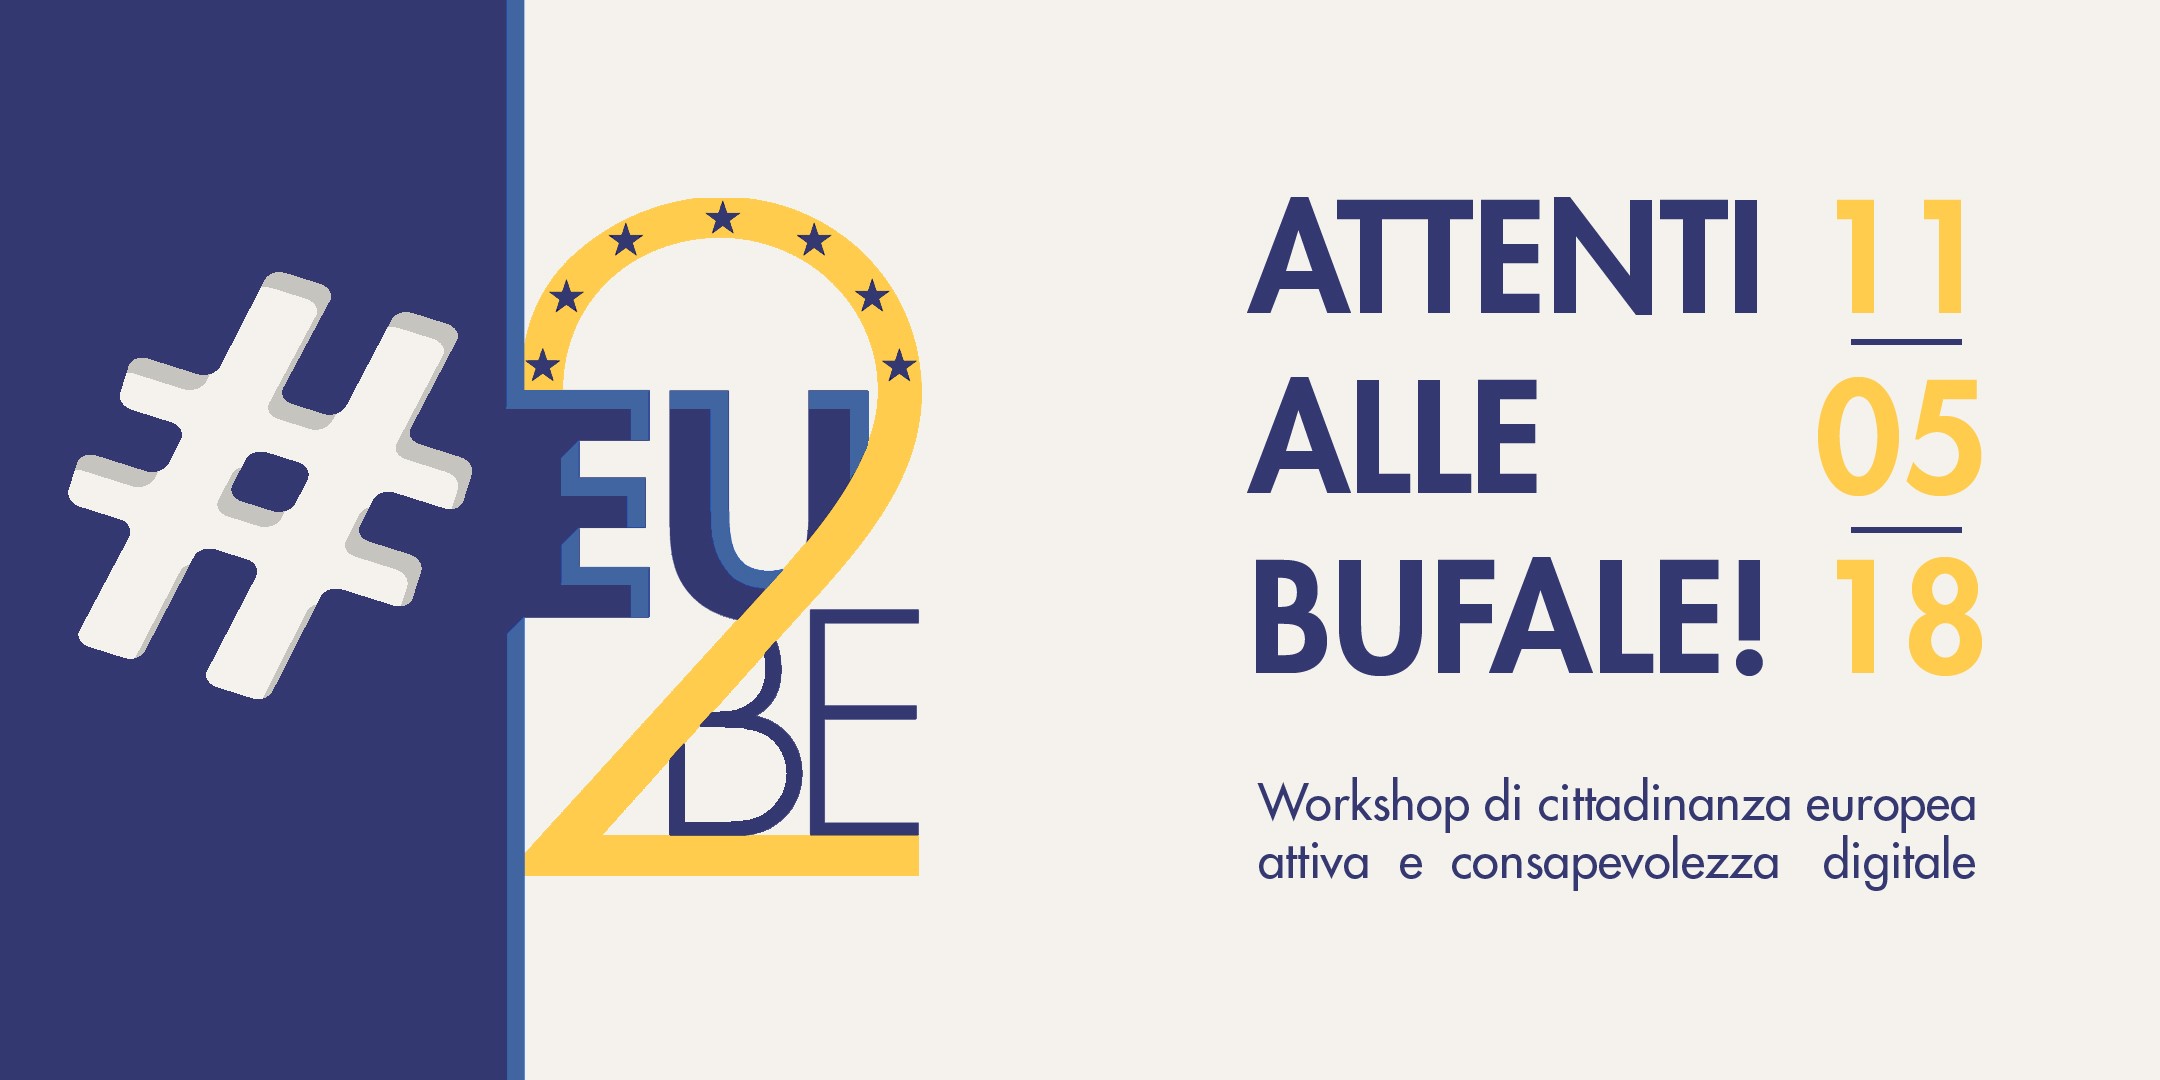 eu2be_ evento_ 11-05-2018